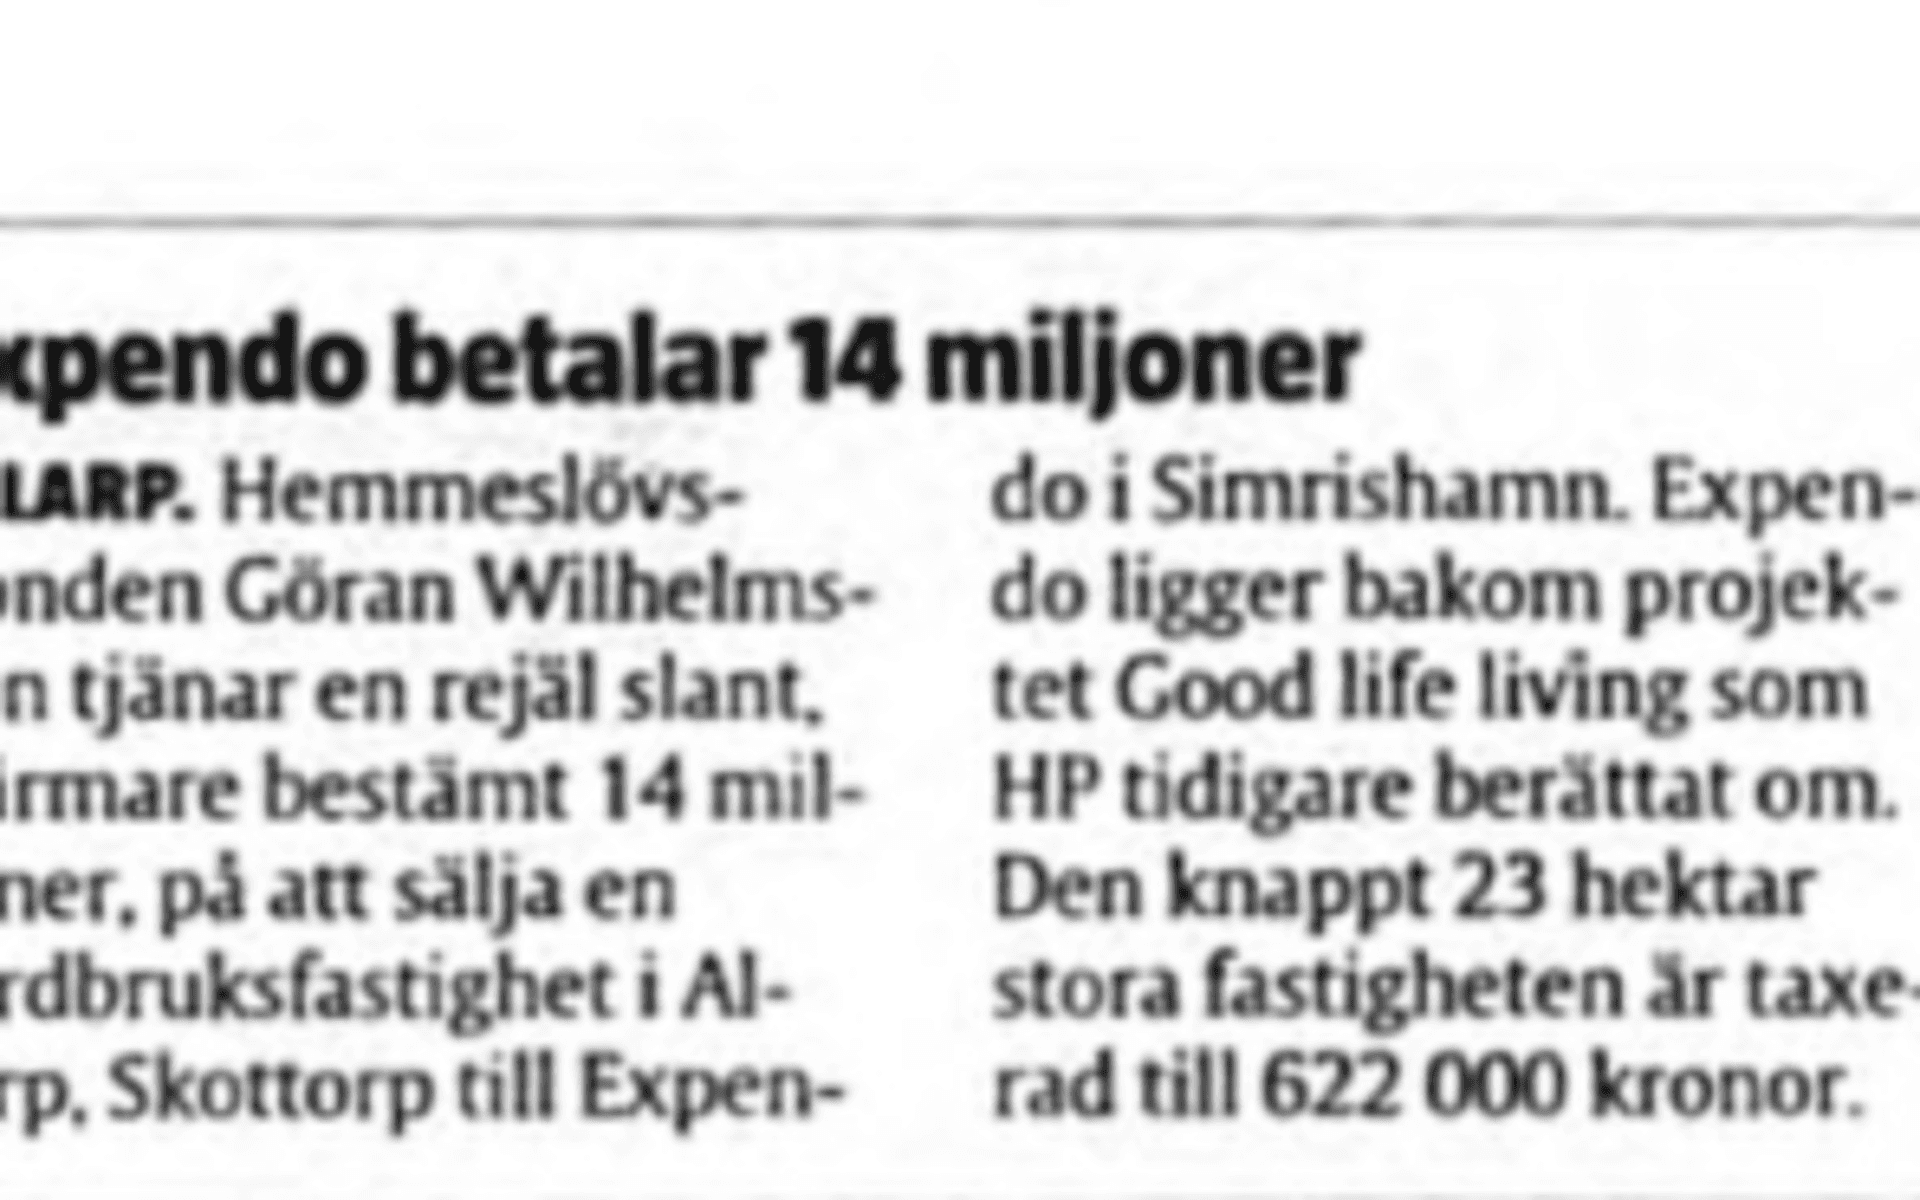 2007. En notis i Hallandsposten förkunnar att Expendo köpt marken i Allarp för 14 miljoner kronor.